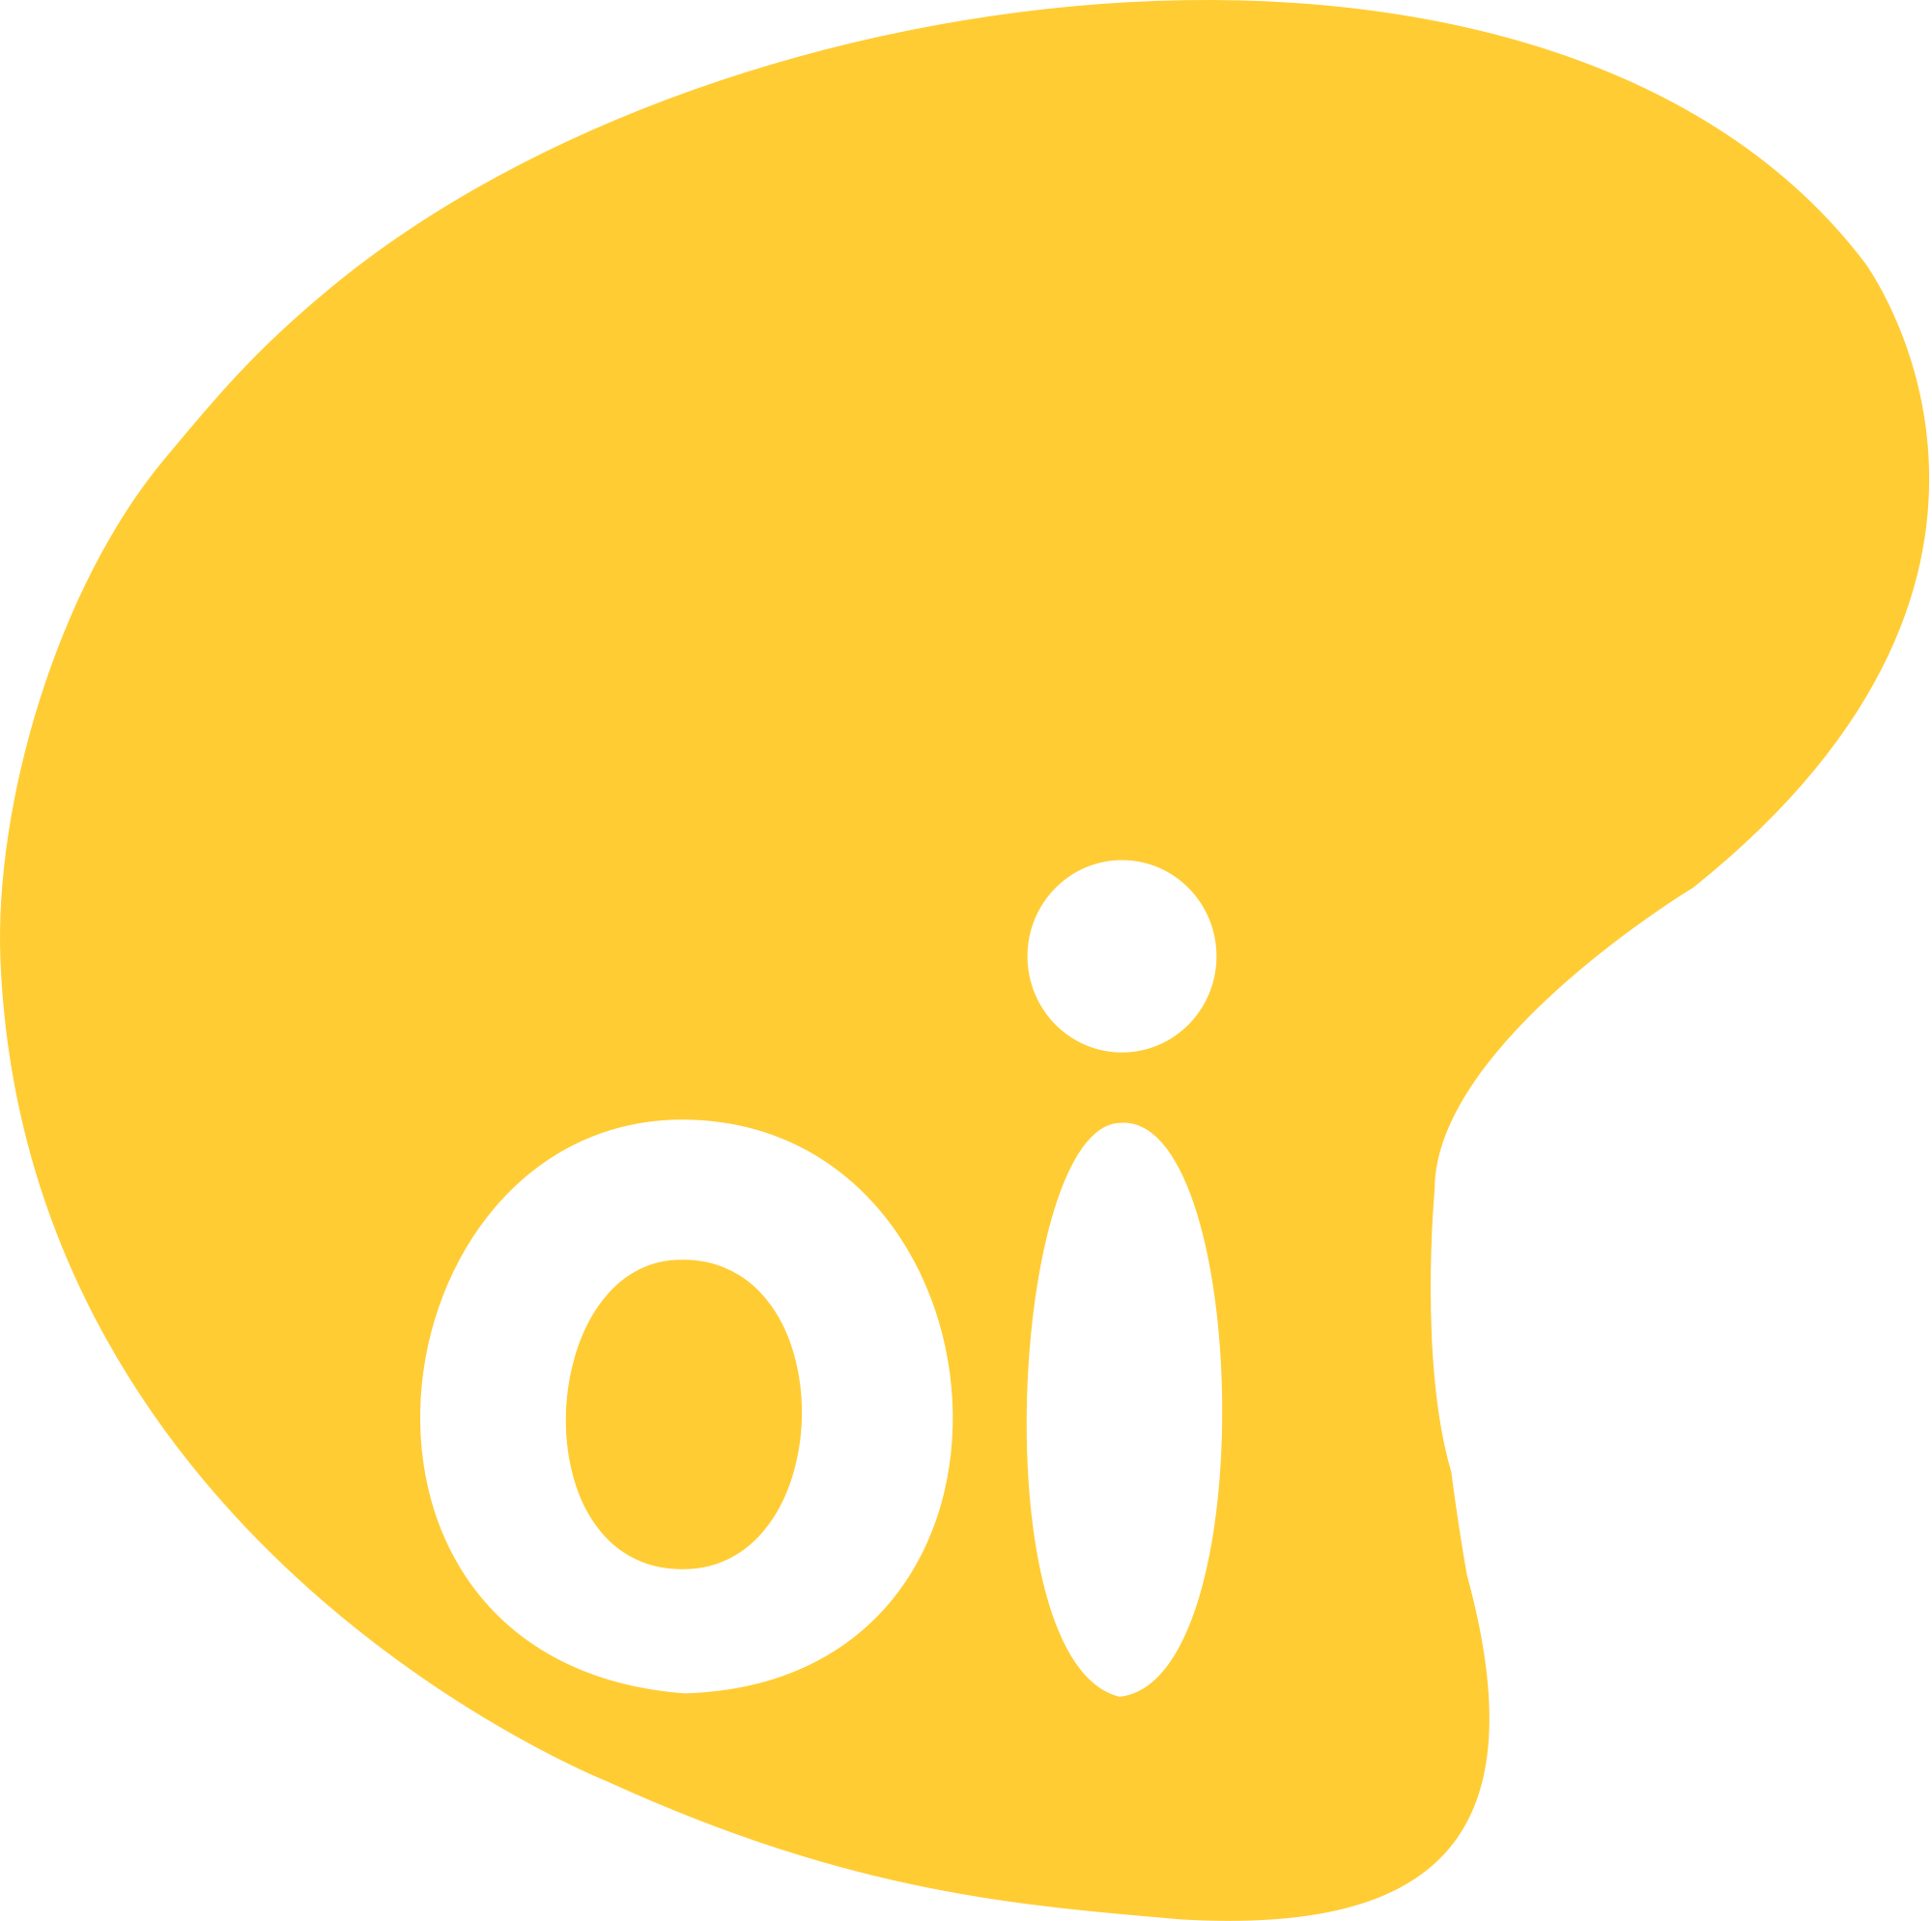 Oi Logo photo - 1